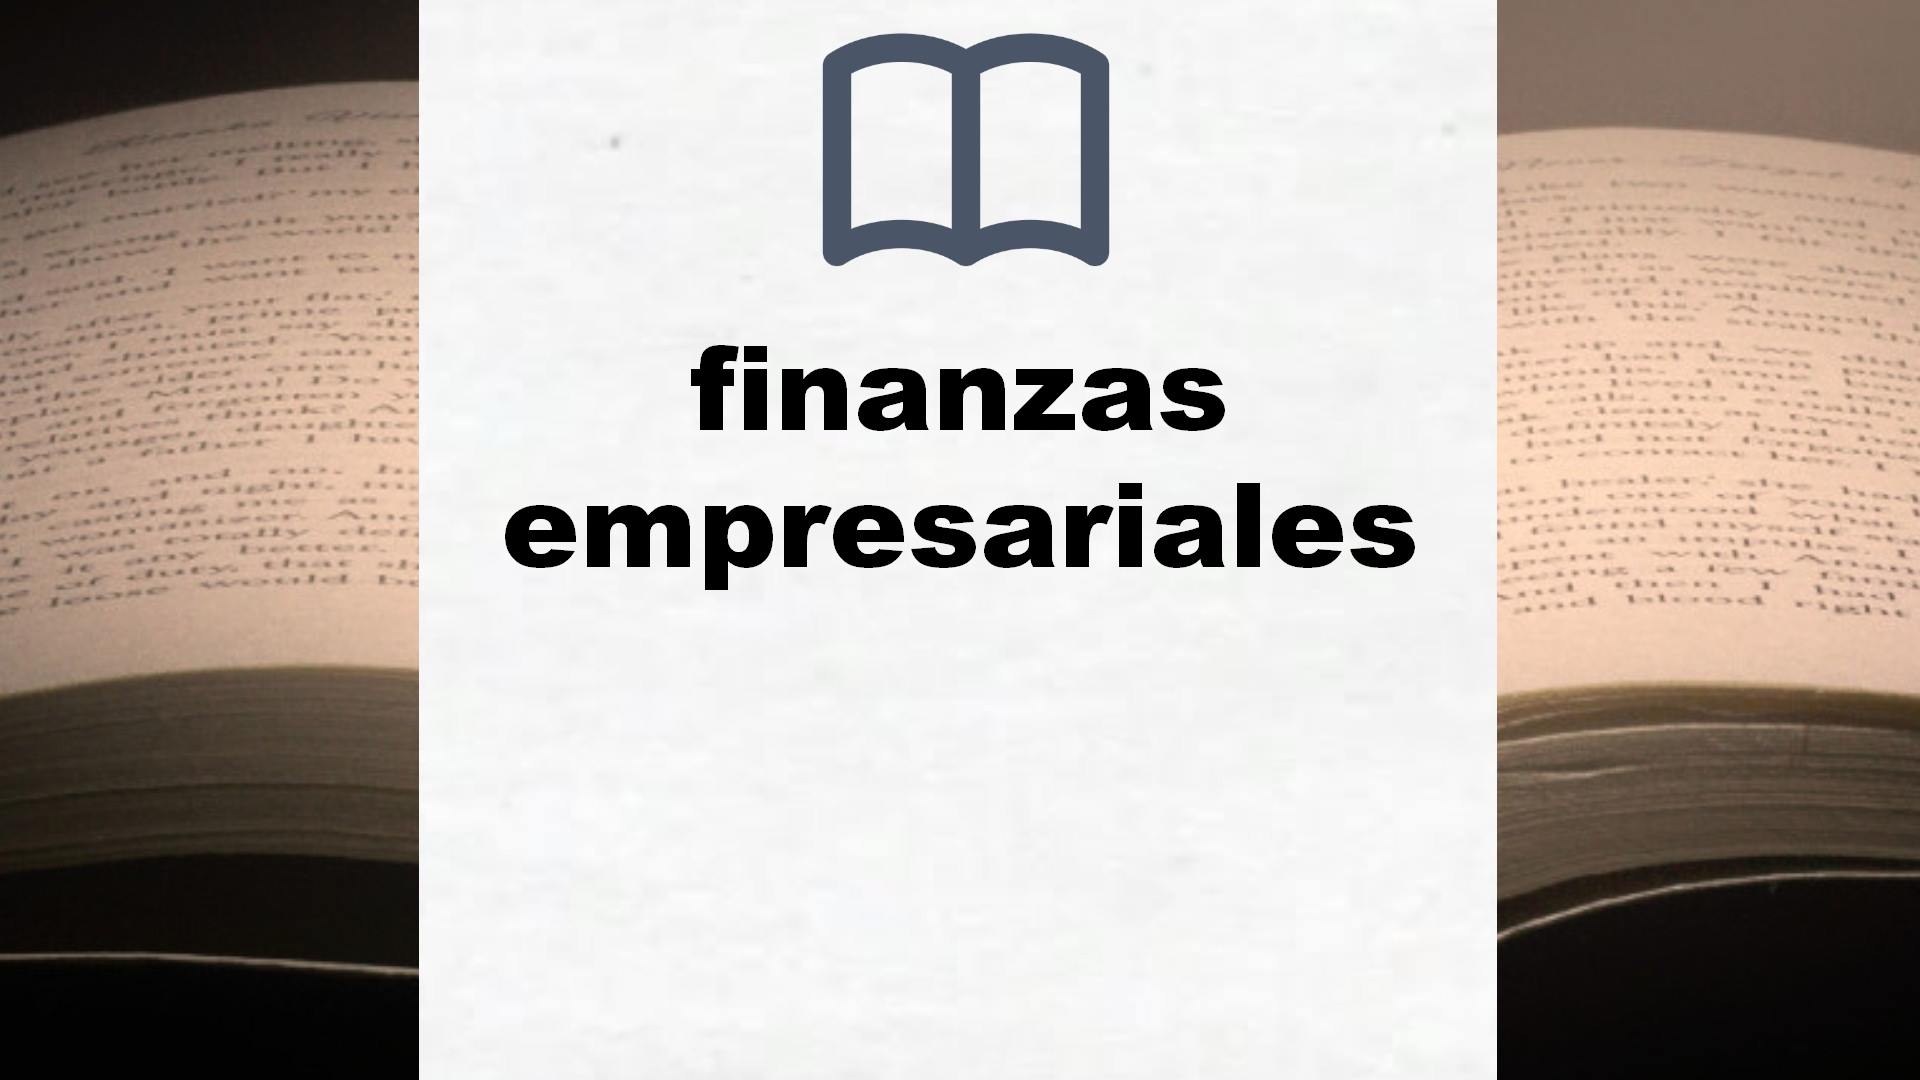 Libros sobre finanzas empresariales